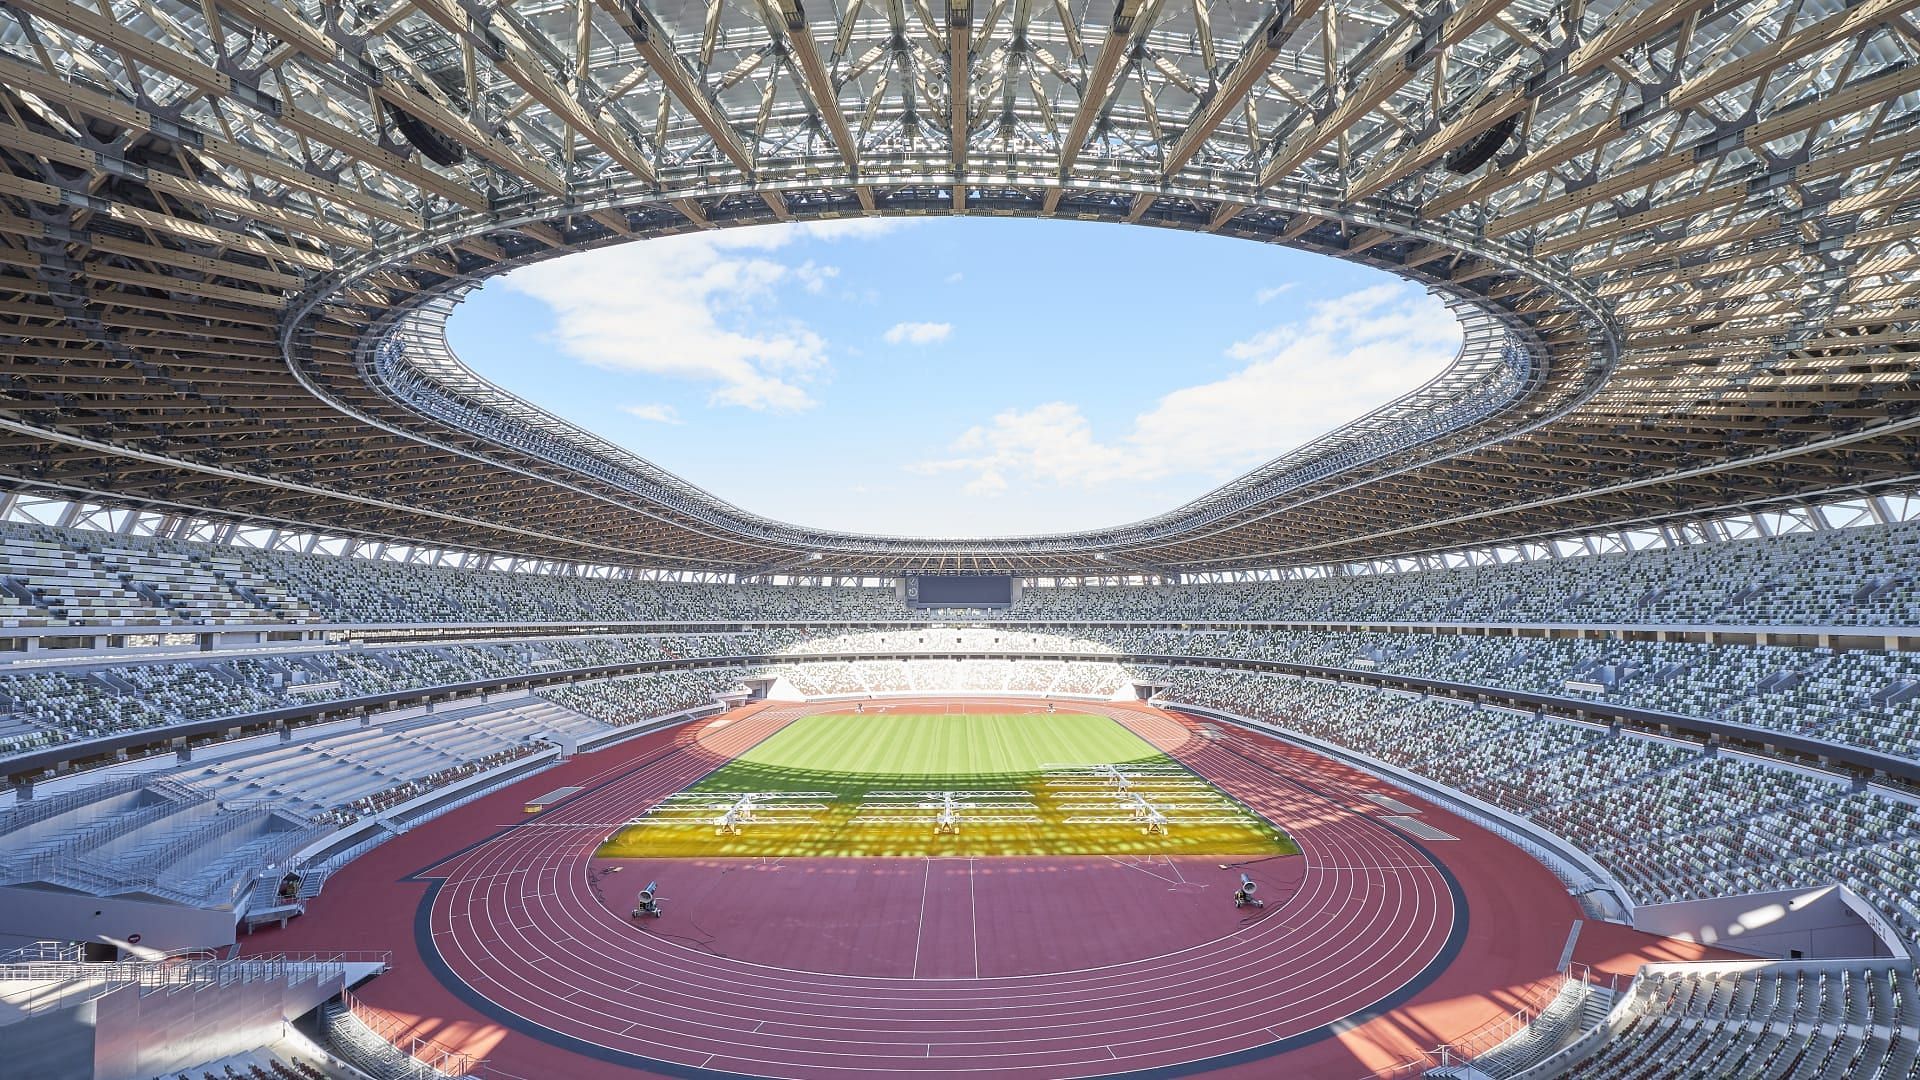 टोक्यो ओलंपिक स्टेडियम जहां विश्व चैंपियनशिप्स का आयोजन 2025 में होगा।